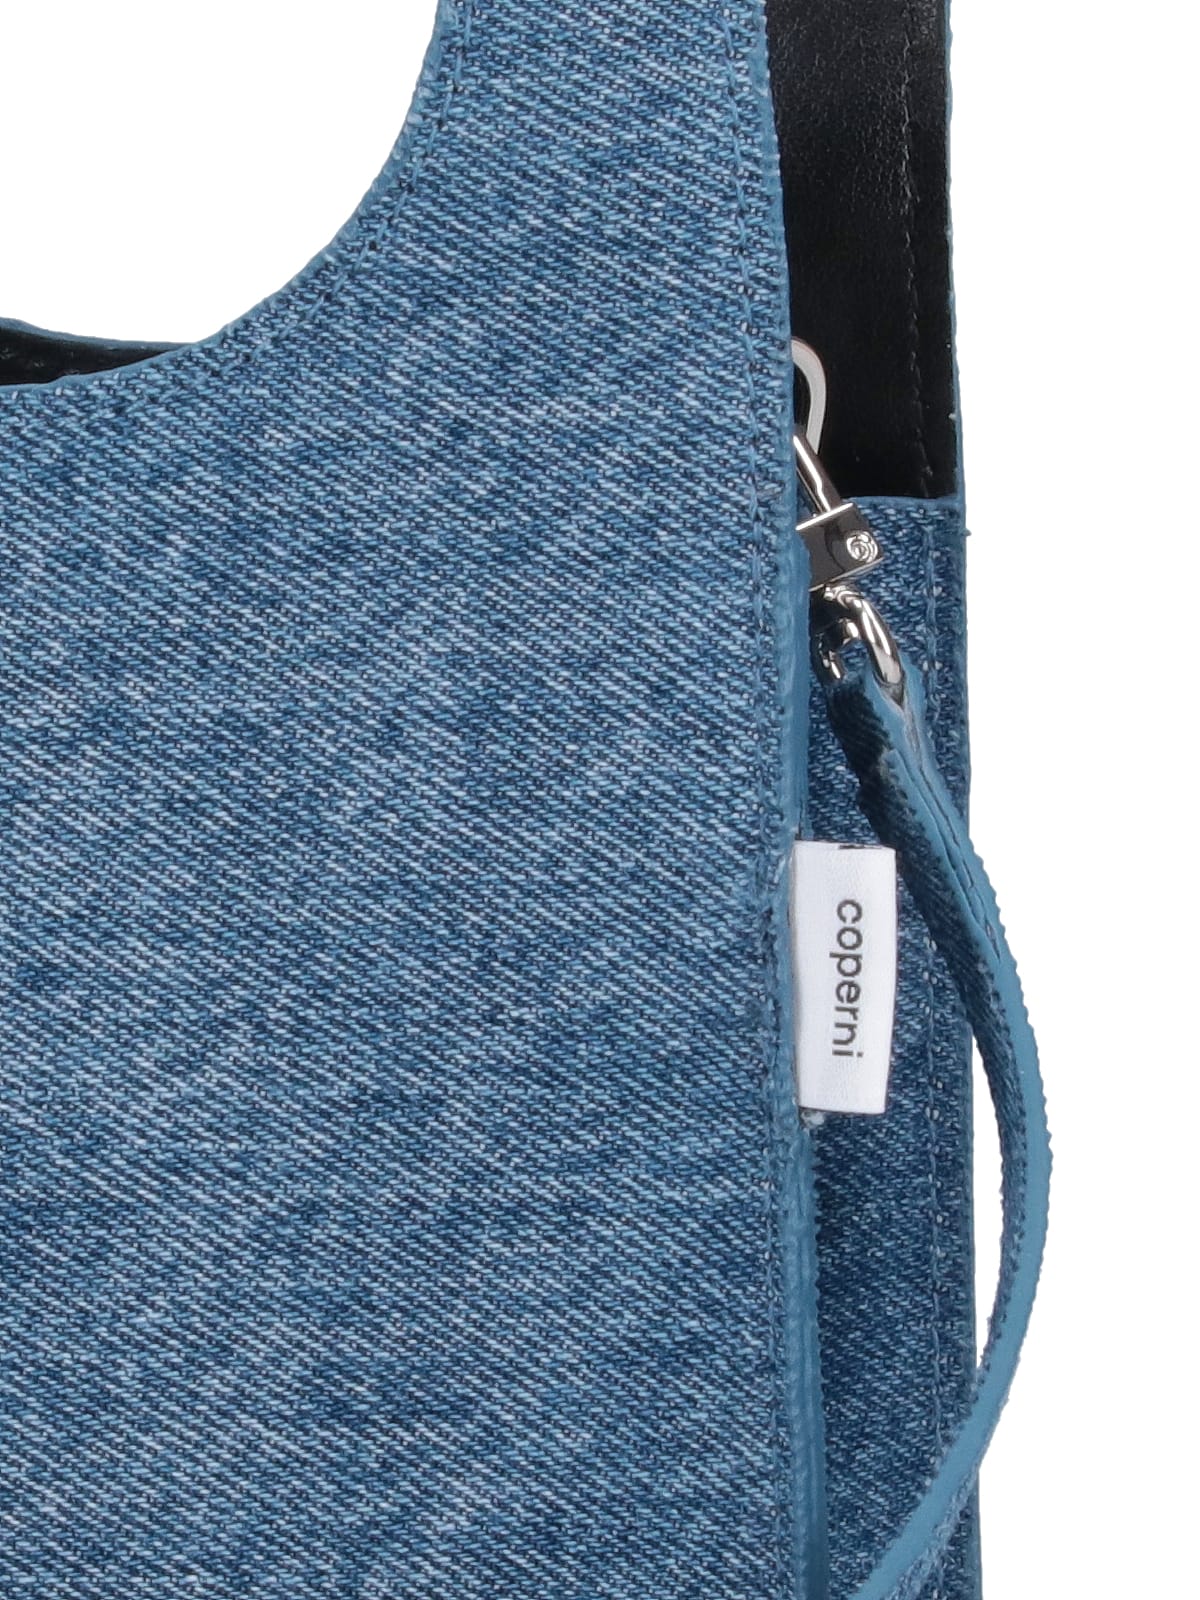 Shop Coperni Micro Tote Bag Swipe In Blue